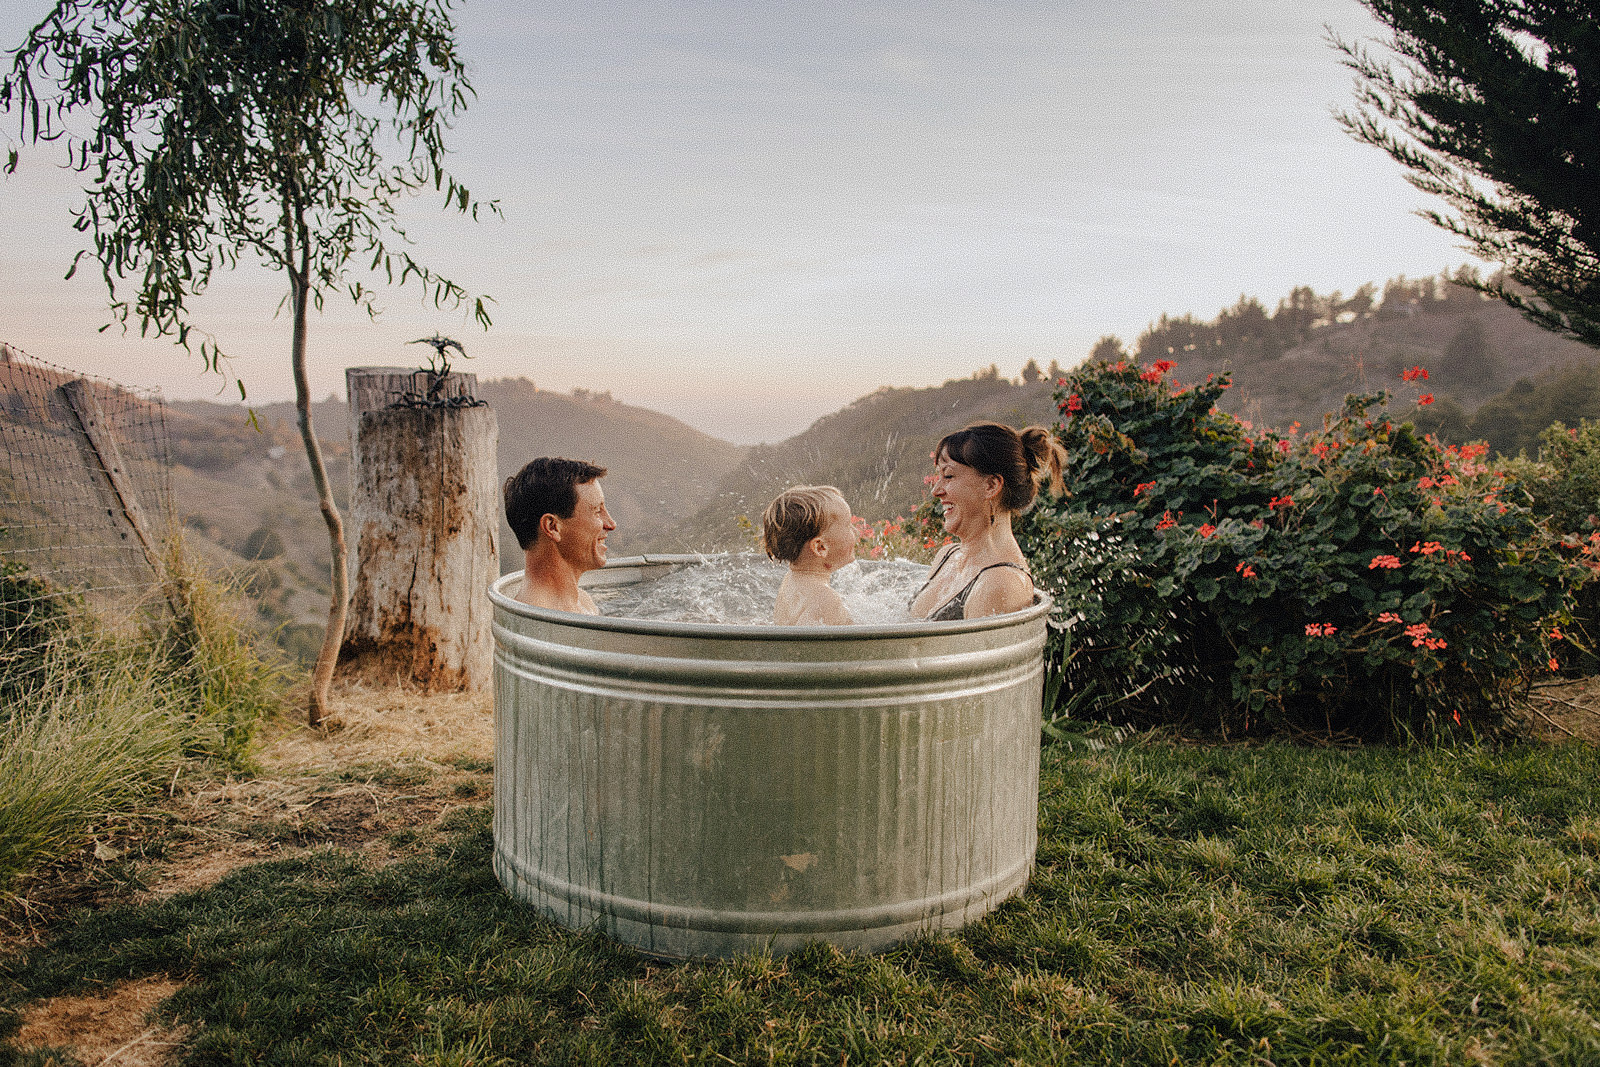 Family in outdoor bath in Big Sur